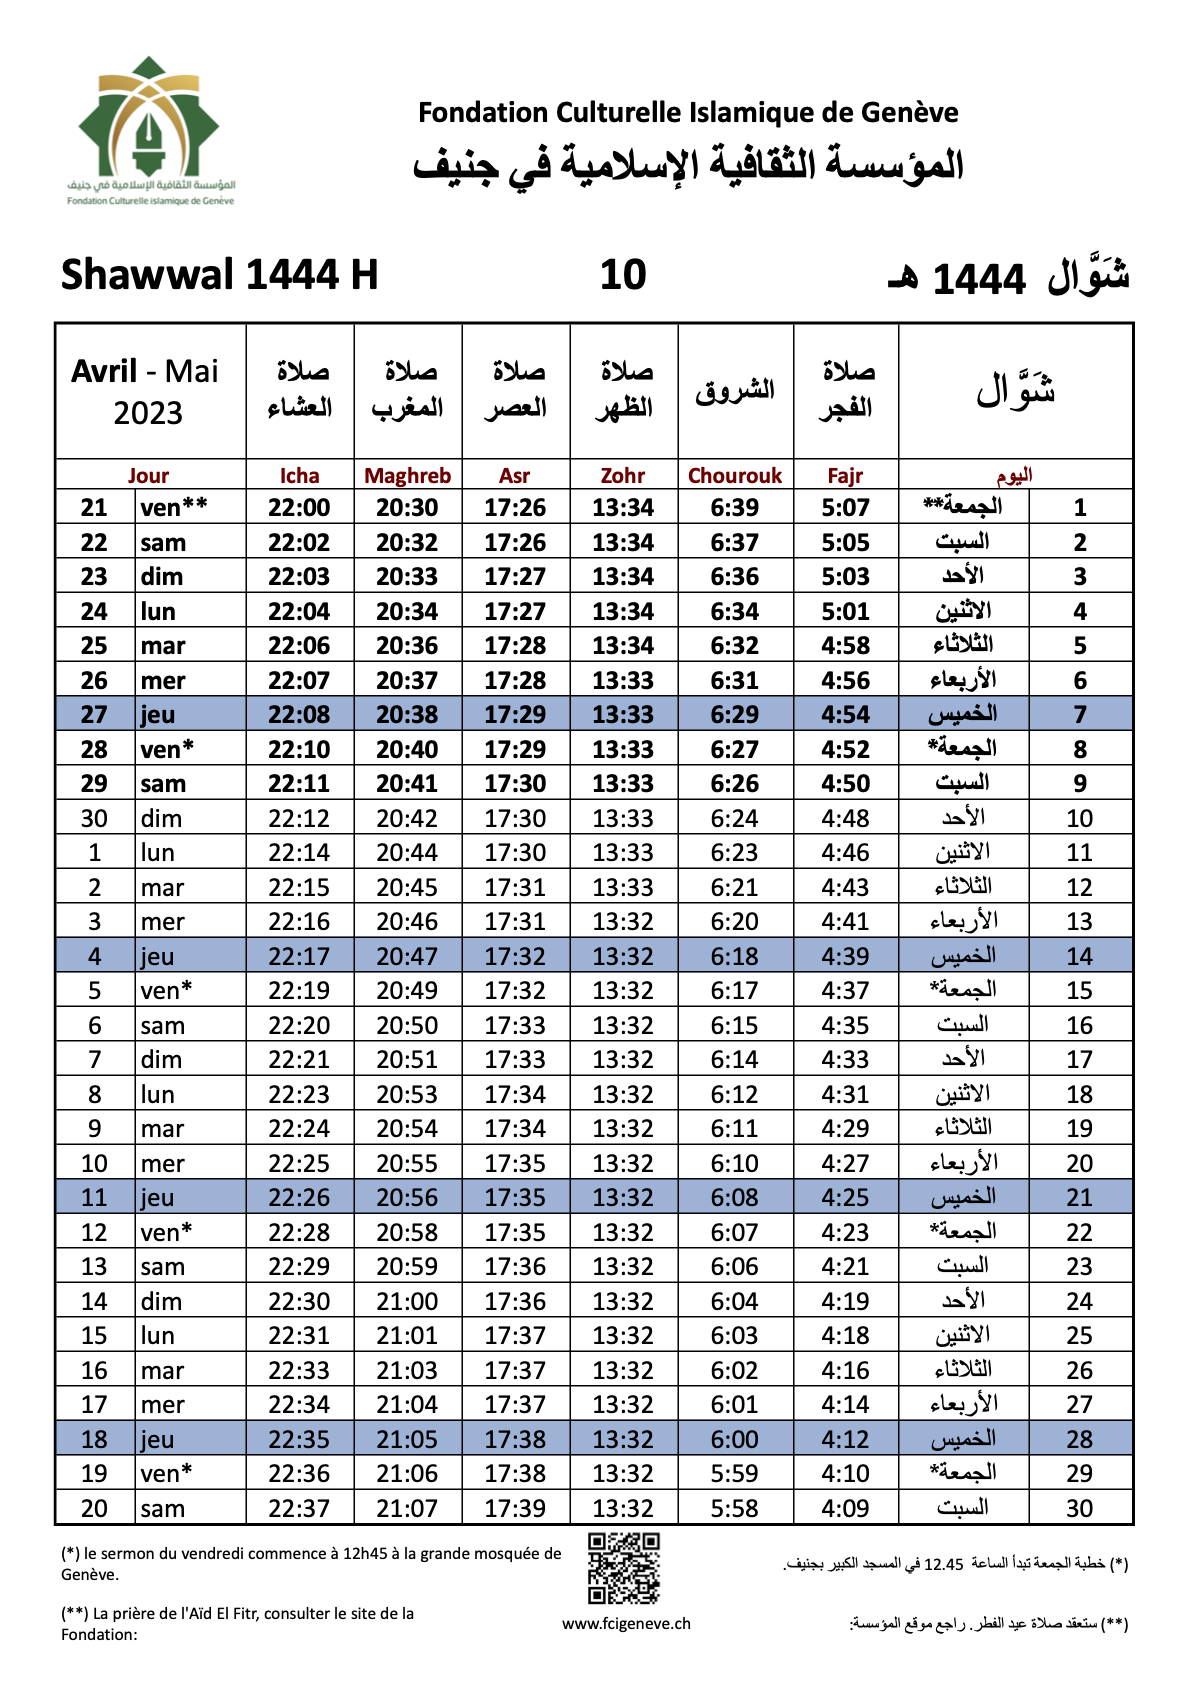 Calendrier du Mois de Ramadan 2023/1444